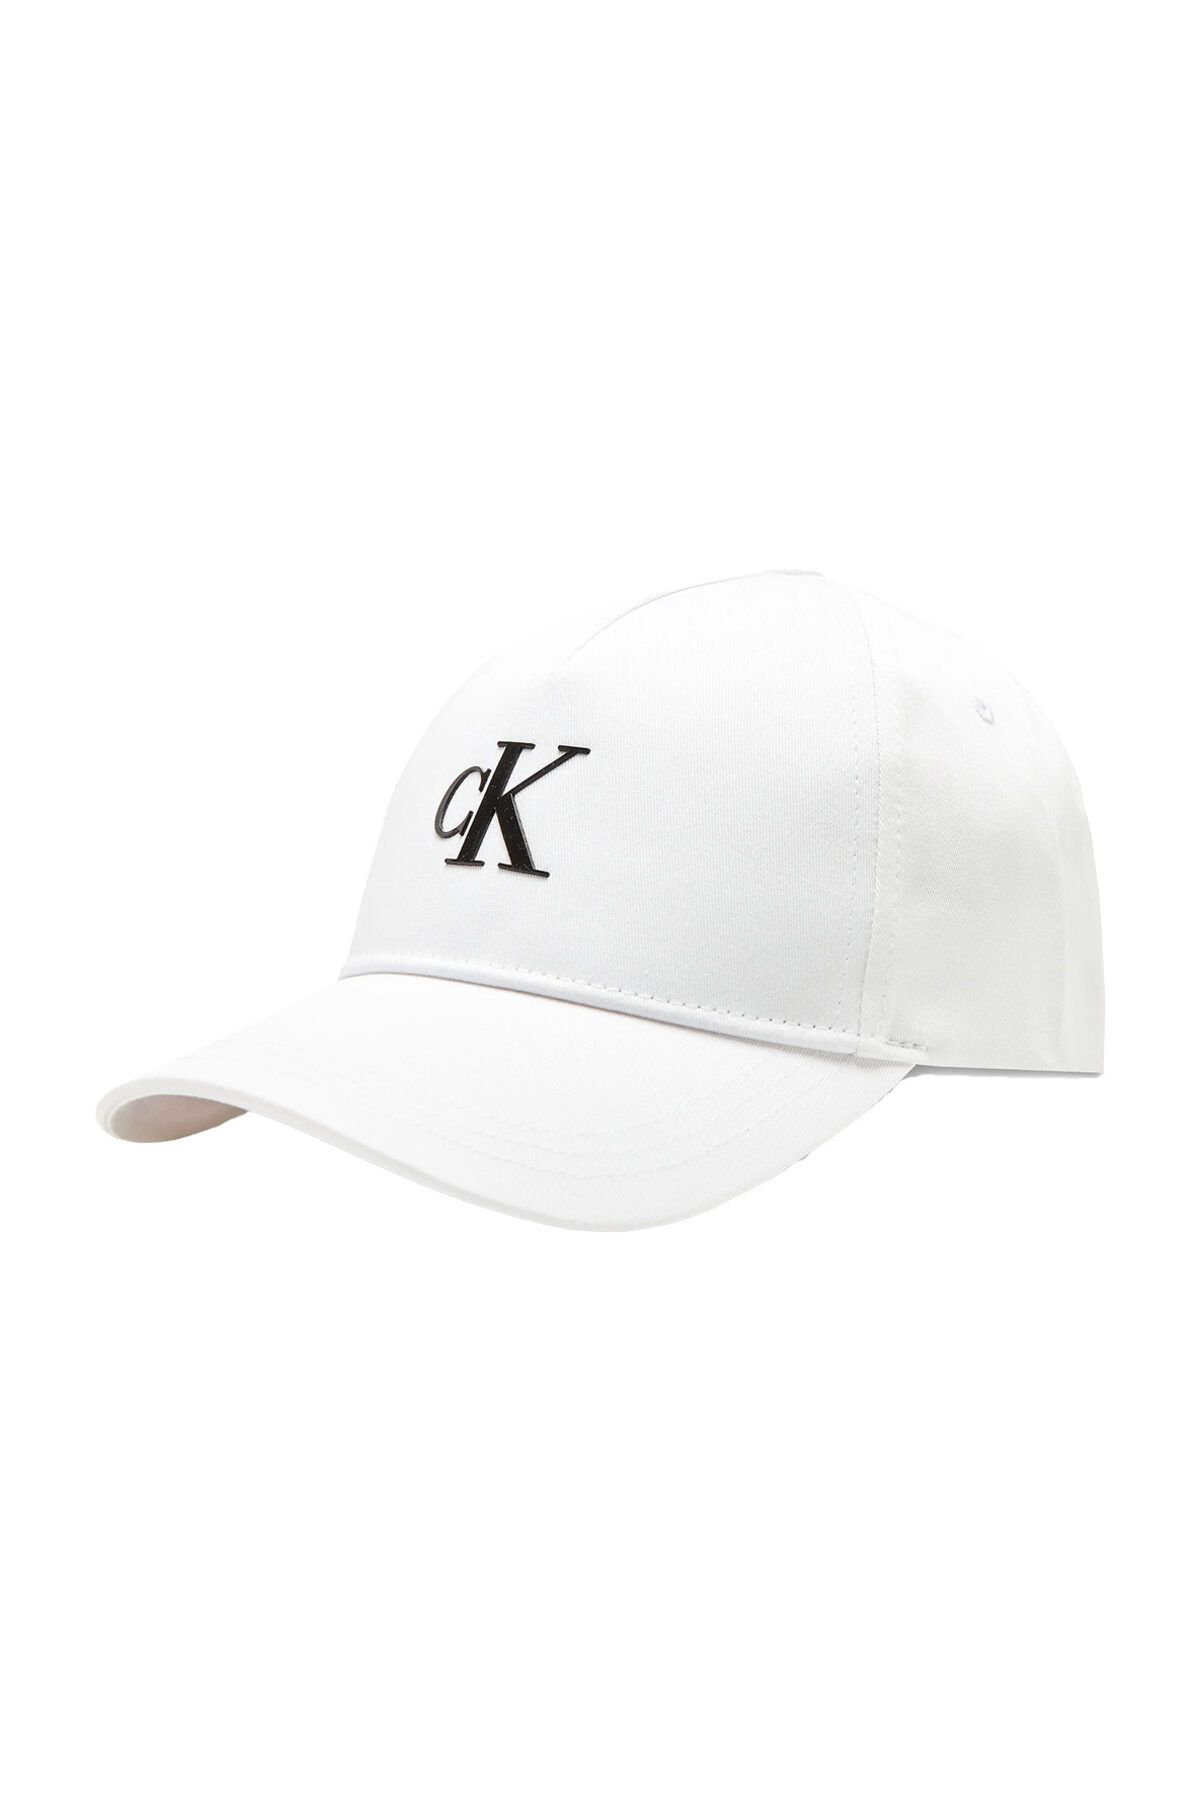 Calvin Klein Logolu Pamuklu Şapka K50k510750yaf Erkek Şapka K50k510750 Yaf